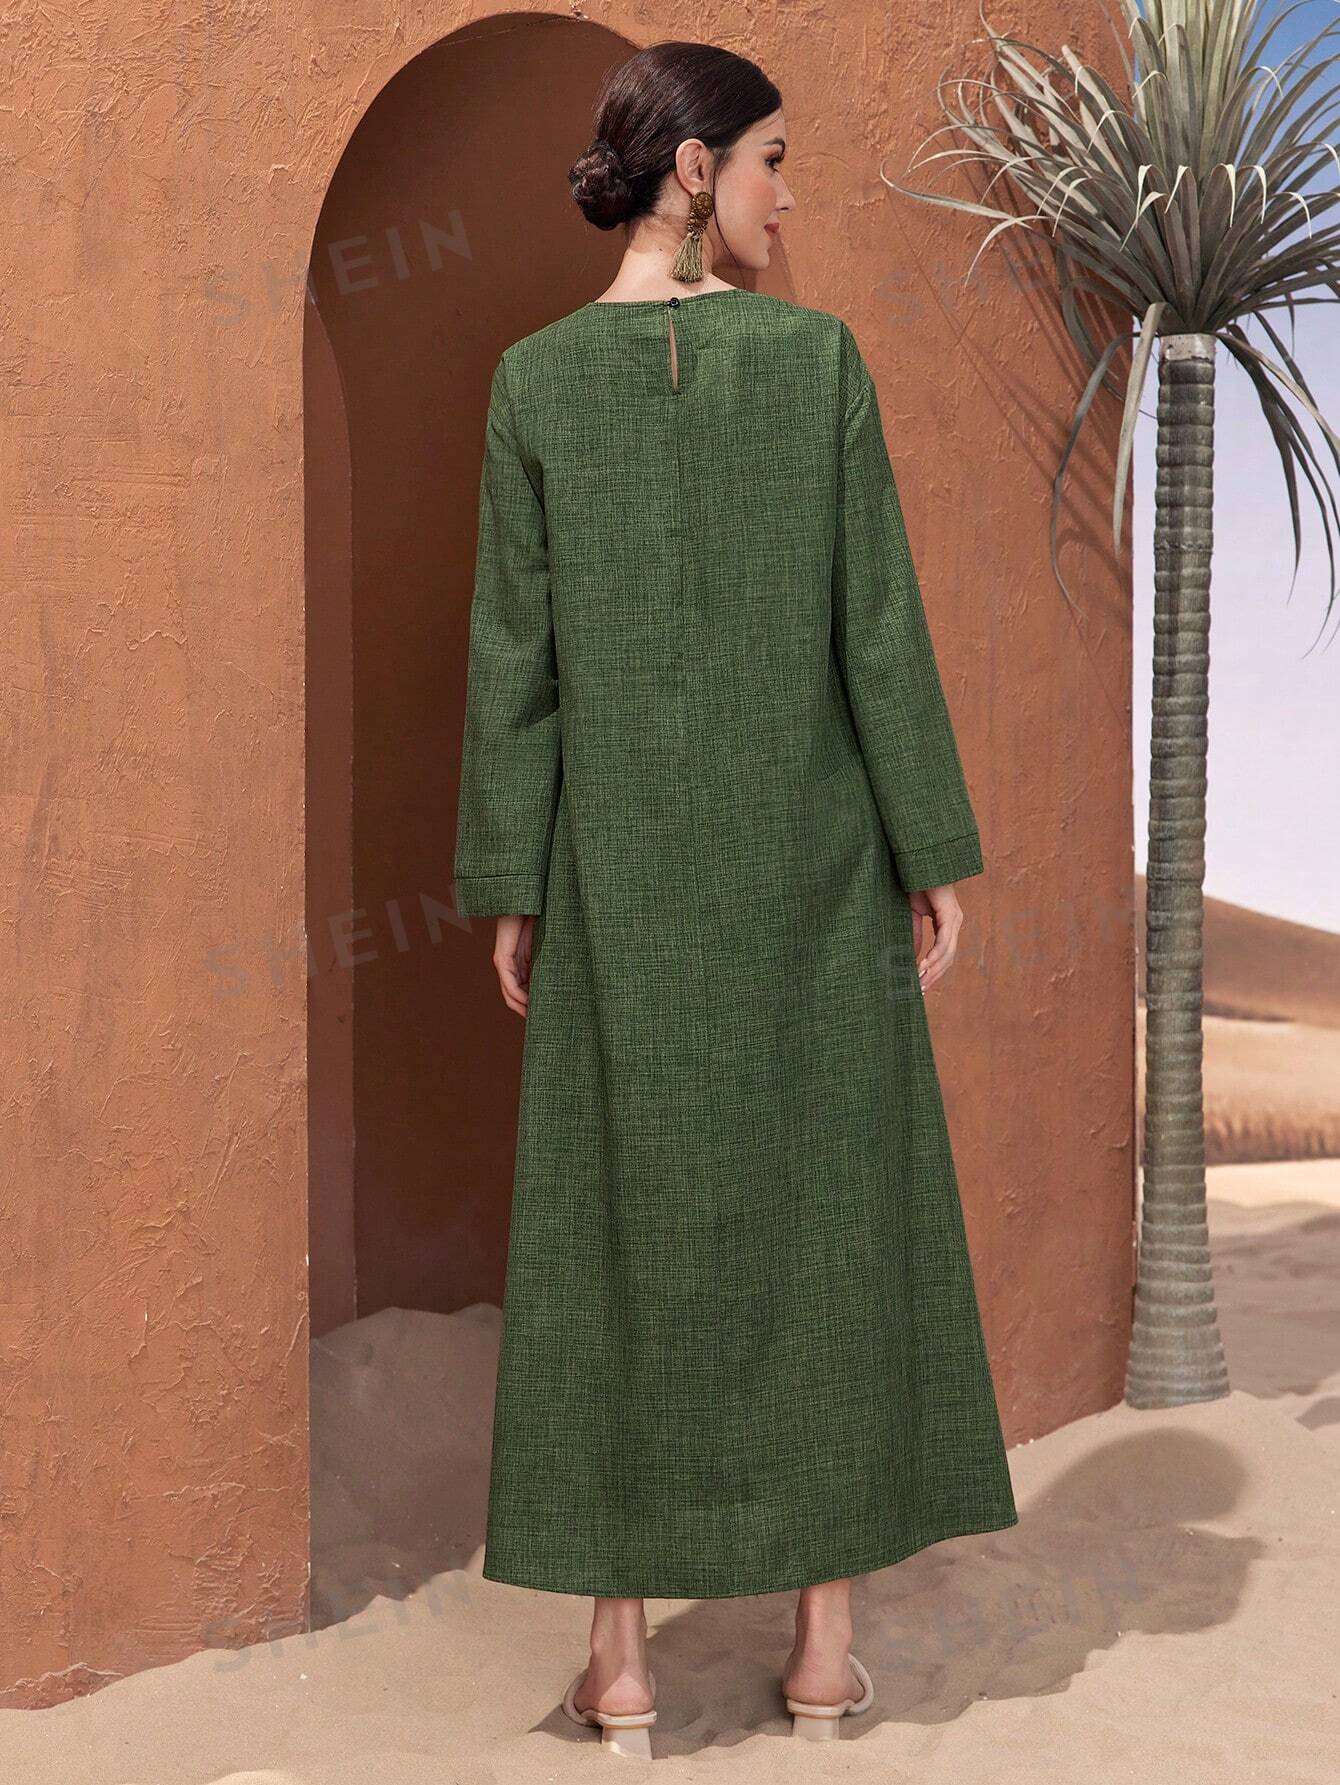 SHEIN Najma Женское льняное платье в арабском стиле с рукавами-колокольчиками, темно-зеленый женское длинное платье в мусульманском стиле длинное платье в арабском стиле вечернее платье в арабском стиле